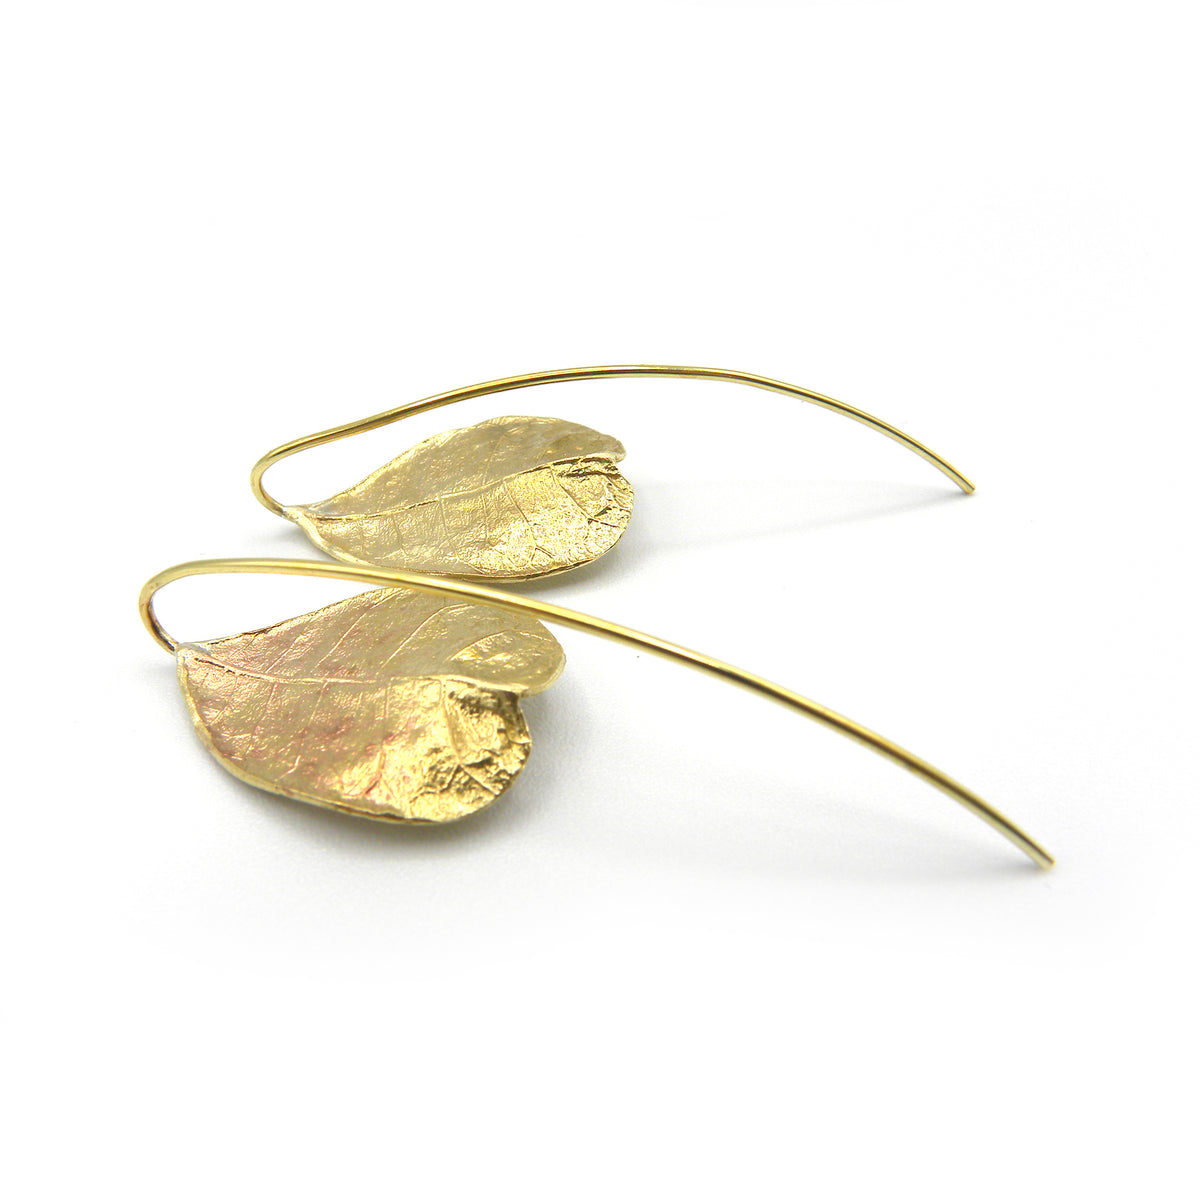 Large jasmine leaf earrings